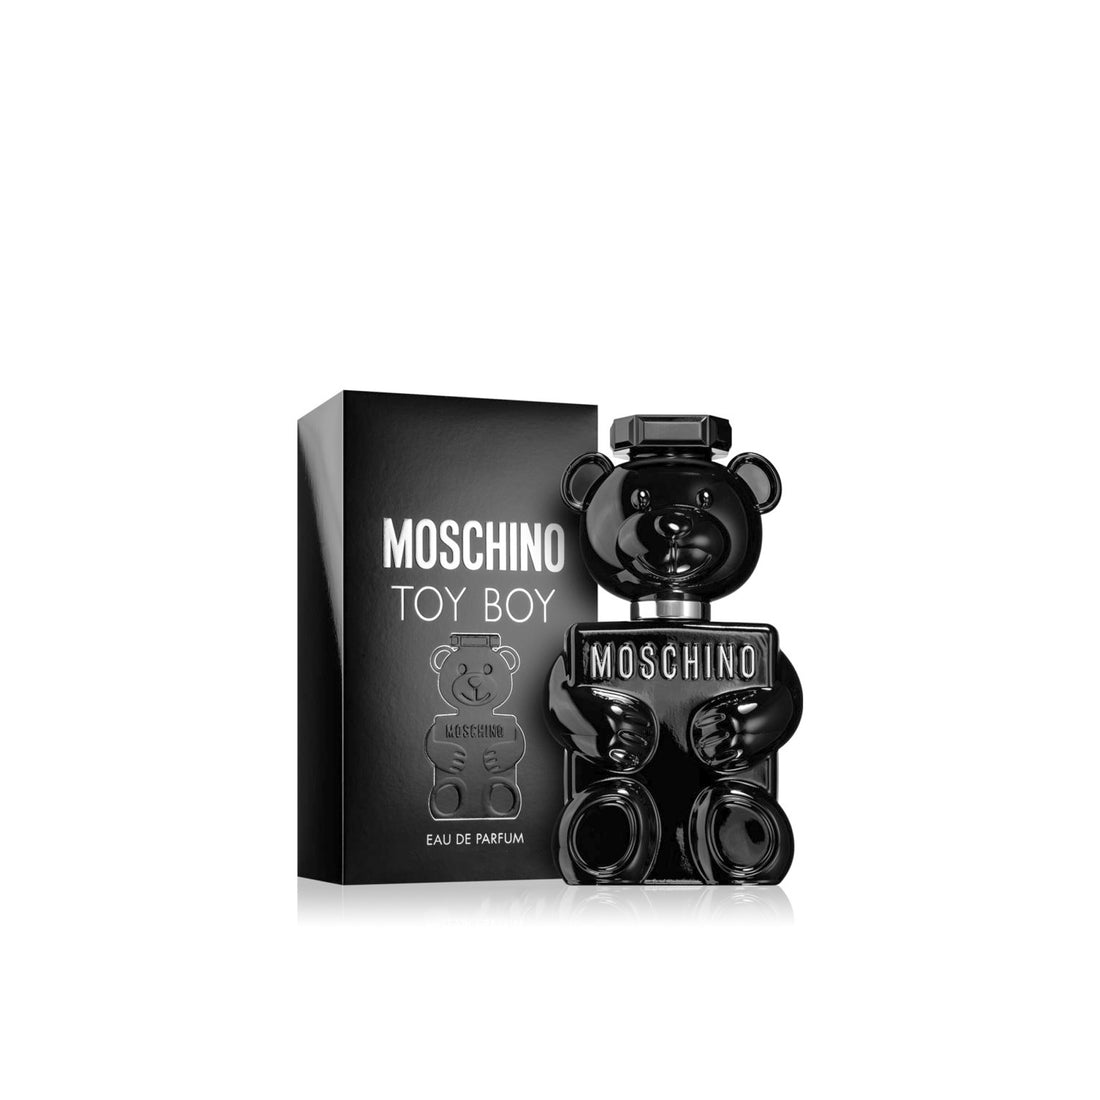 Moschino - Vaporisateur Eau De Parfum Toy Boy 50 Ml